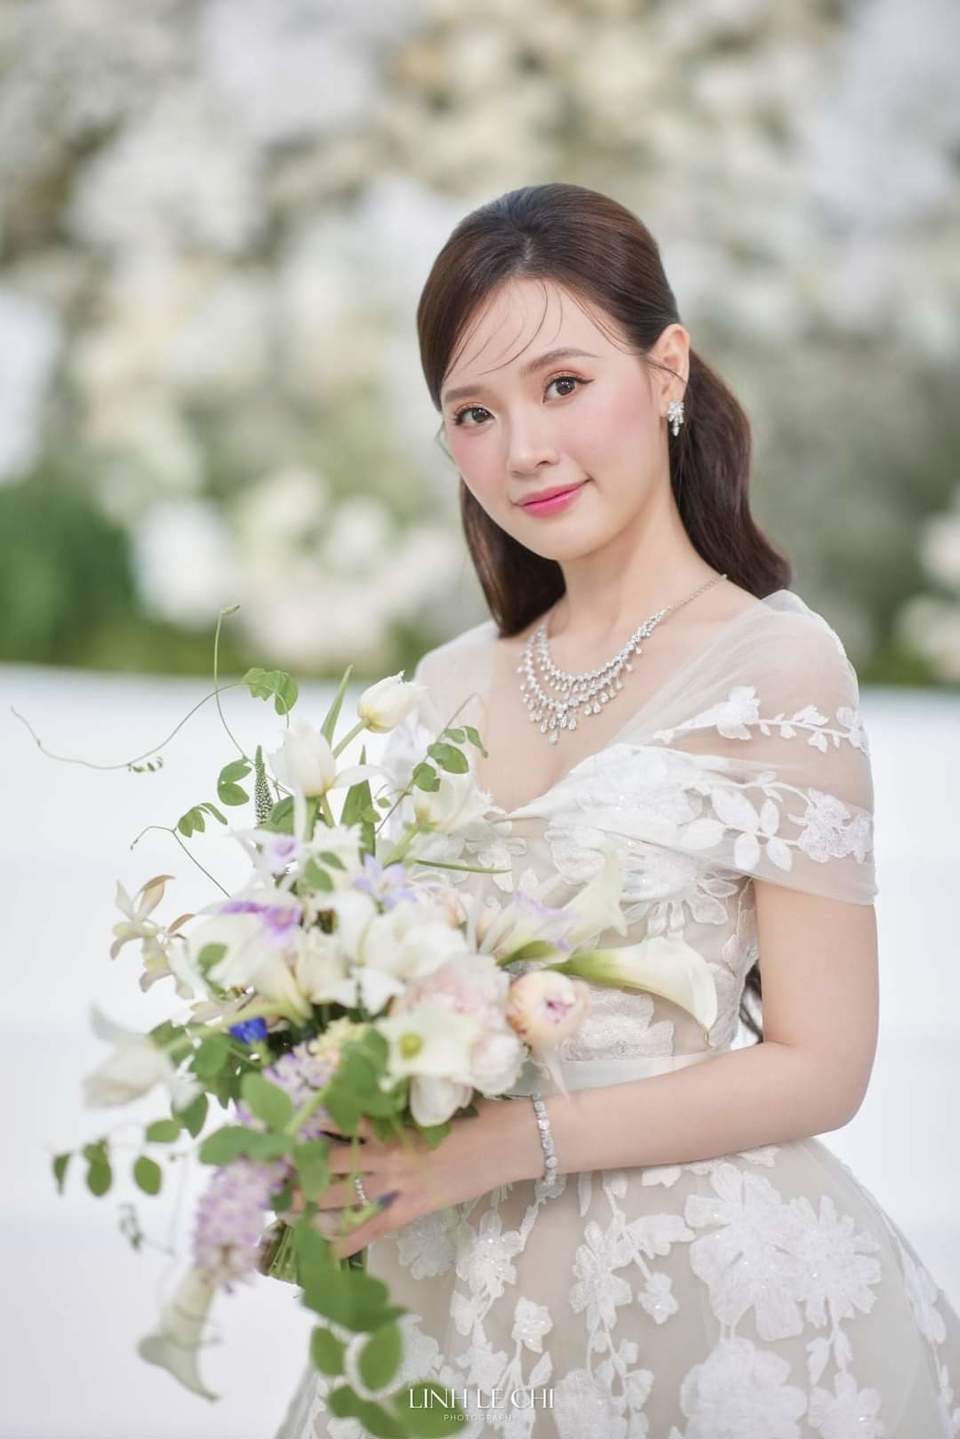 Dàn sao Việt dự đám cưới của Midu và thiếu gia kém tuổi - Ảnh 18